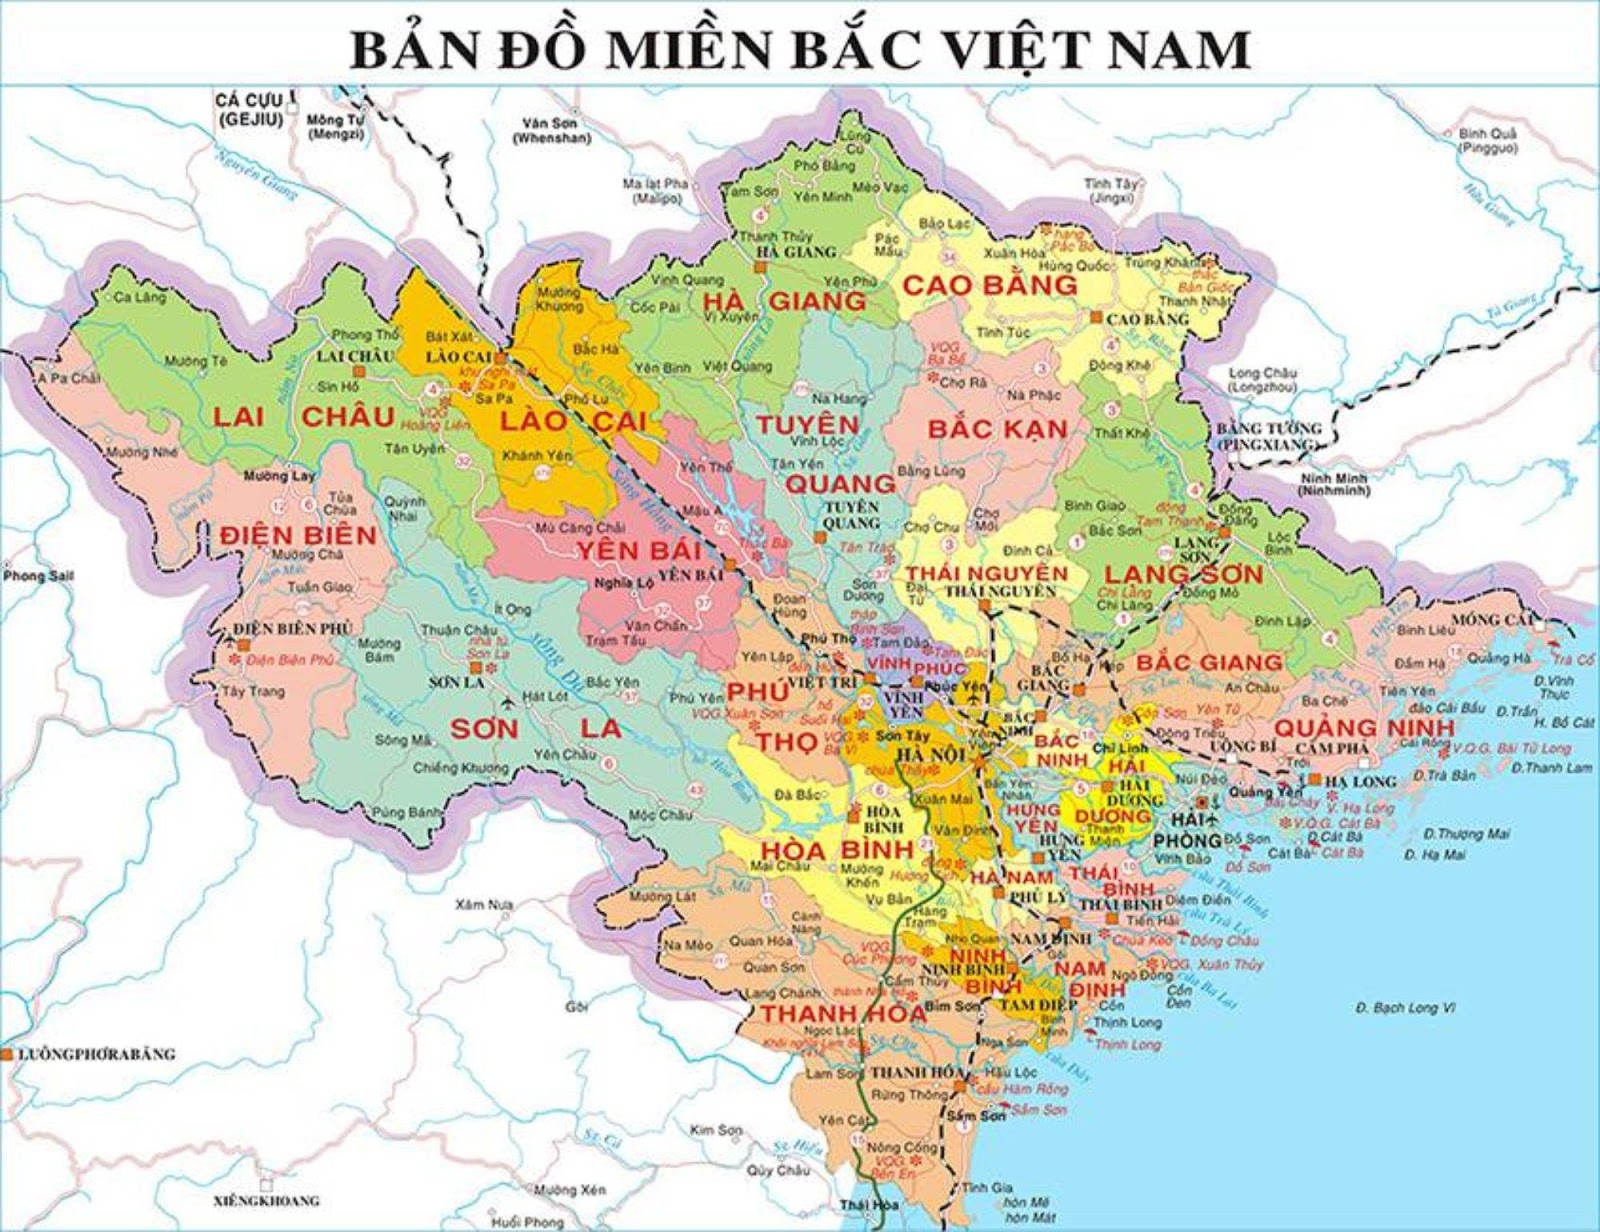 Bản đồ miền Bắc Việt Nam chi tiết mới nhất đã được ra mắt, mang đến cho chúng ta cái nhìn tổng quan về khu vực này cùng những thông tin chi tiết về hệ thống sông ngòi cùng các địa điểm du lịch nổi tiếng. Những ai yêu thích khám phá cũng như tìm hiểu về lịch sử và văn hóa Việt Nam sẽ không nên bỏ lỡ cơ hội này!